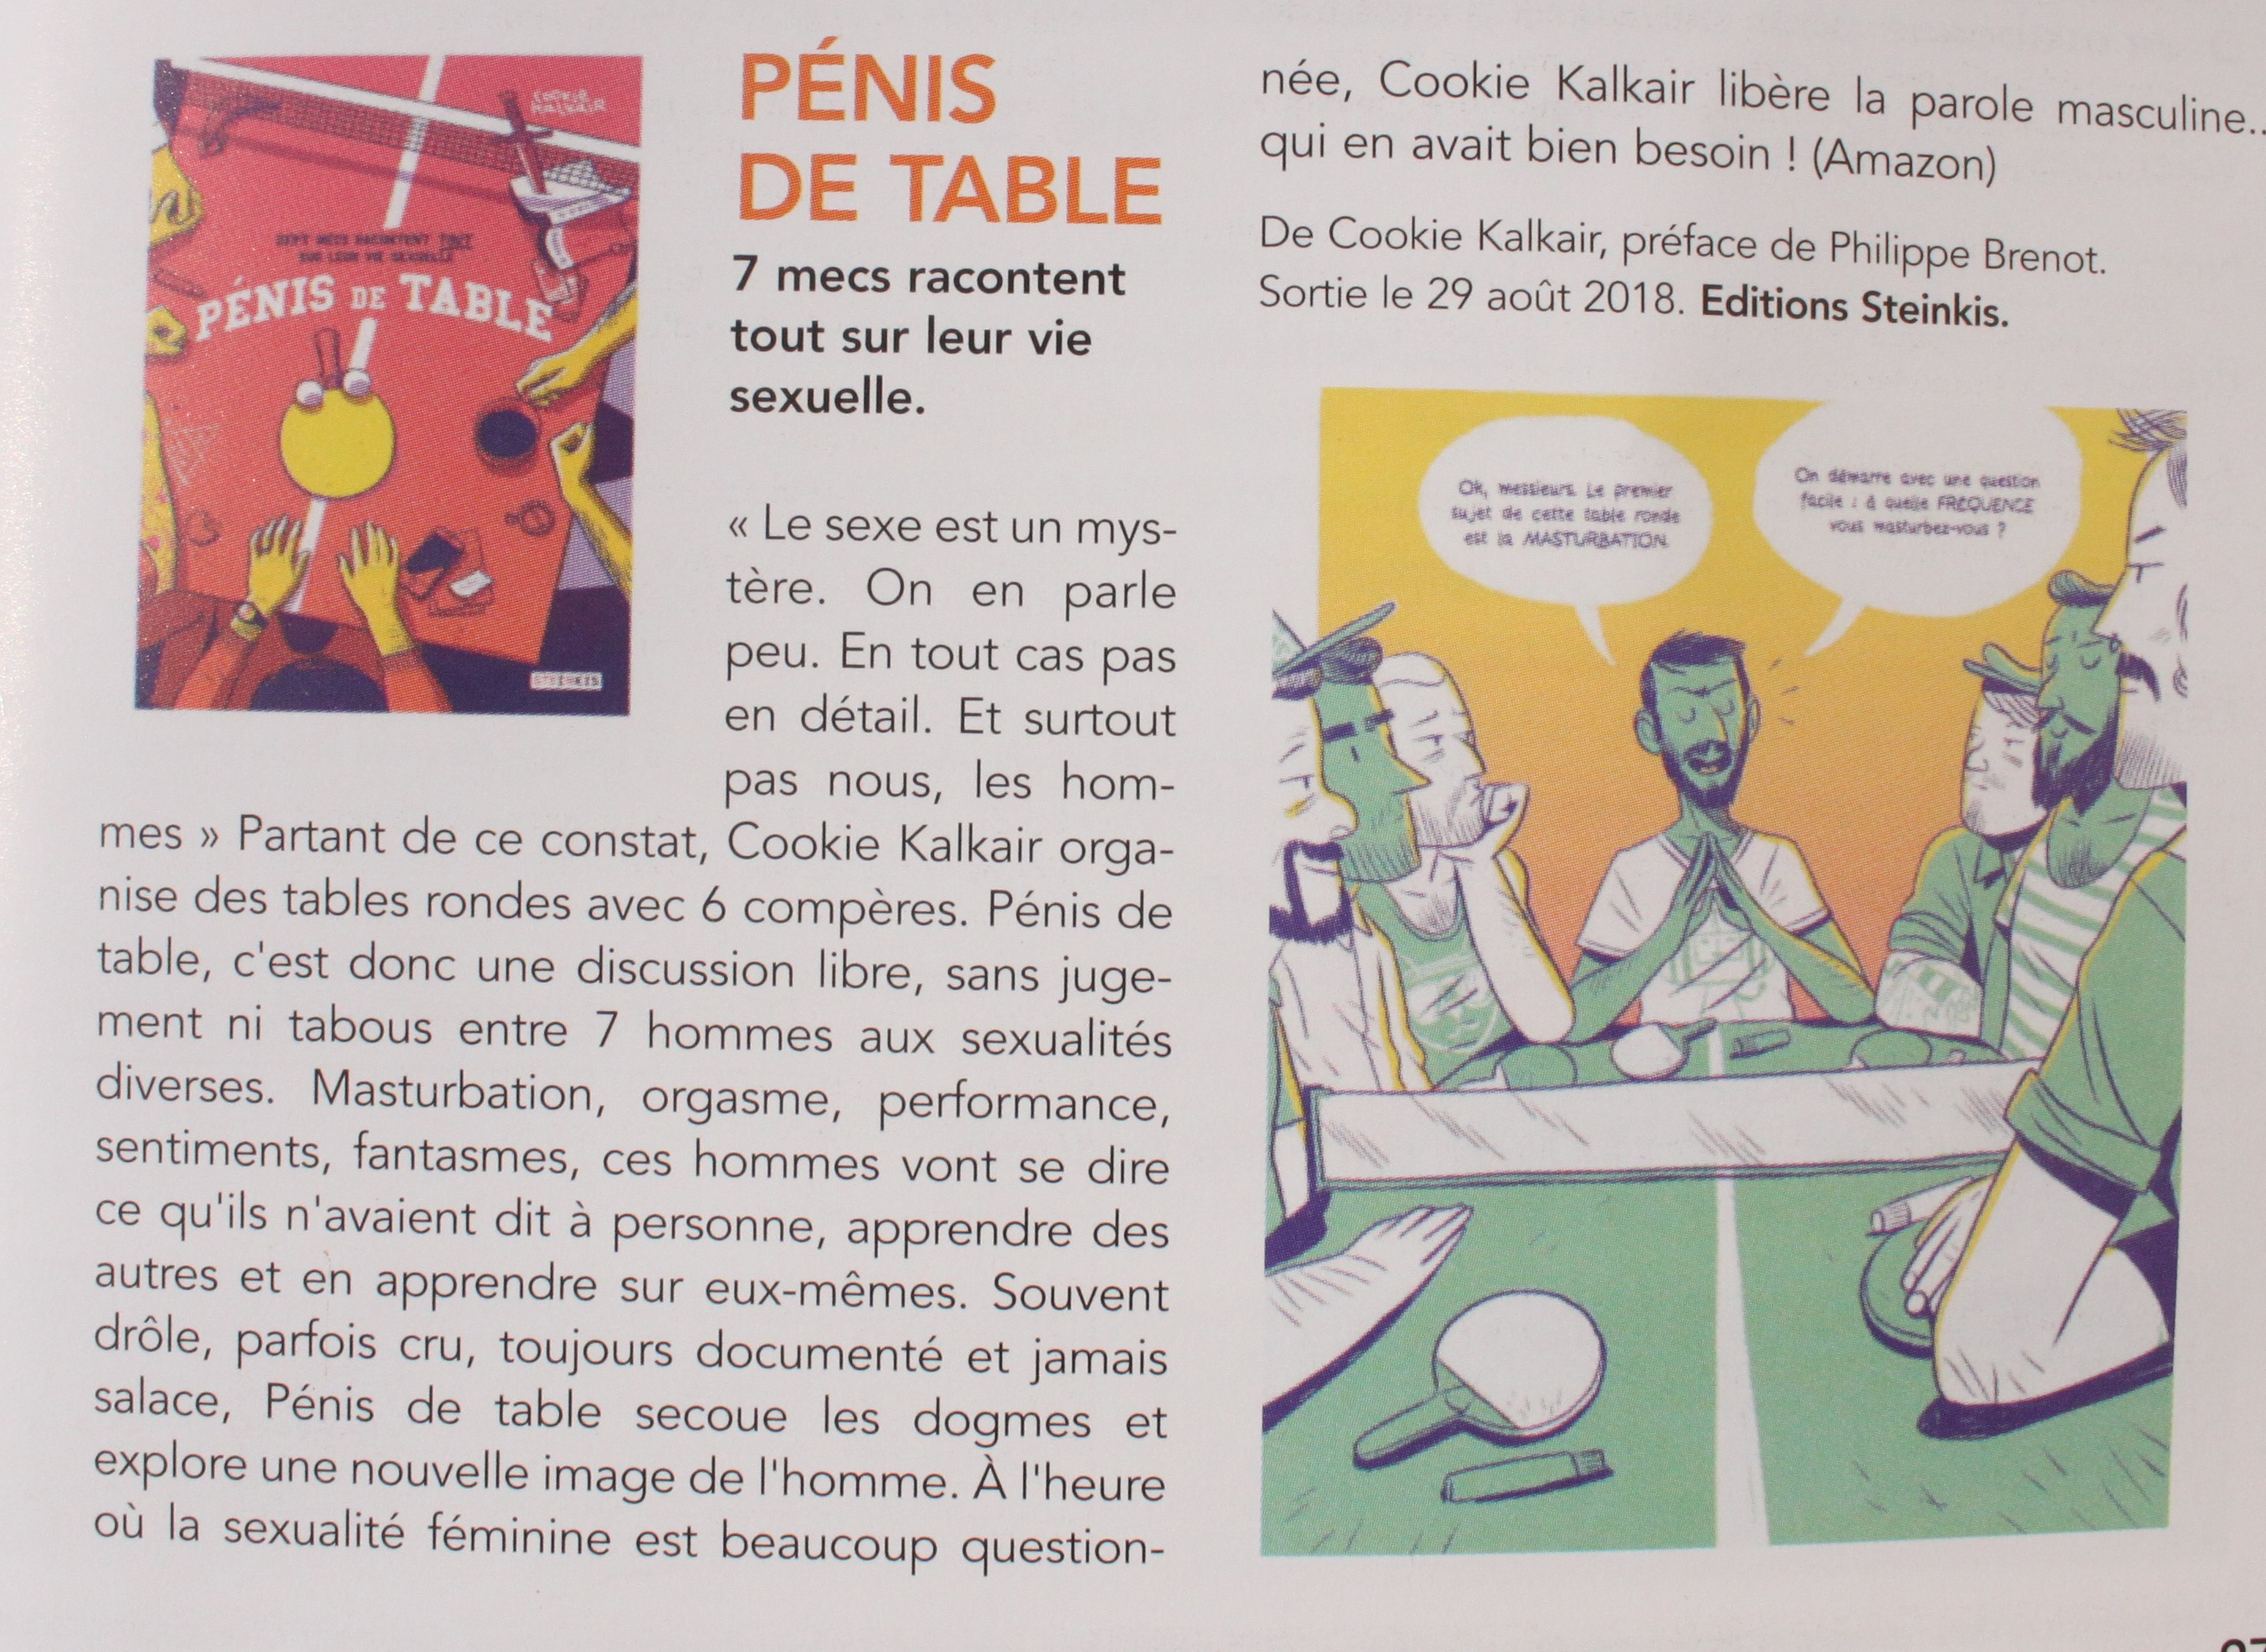 bibliotheque erotique sexualités humaines quel livre choisir quelle lecture erotique choisir BD érotique editions steinkis Philippe Brenot